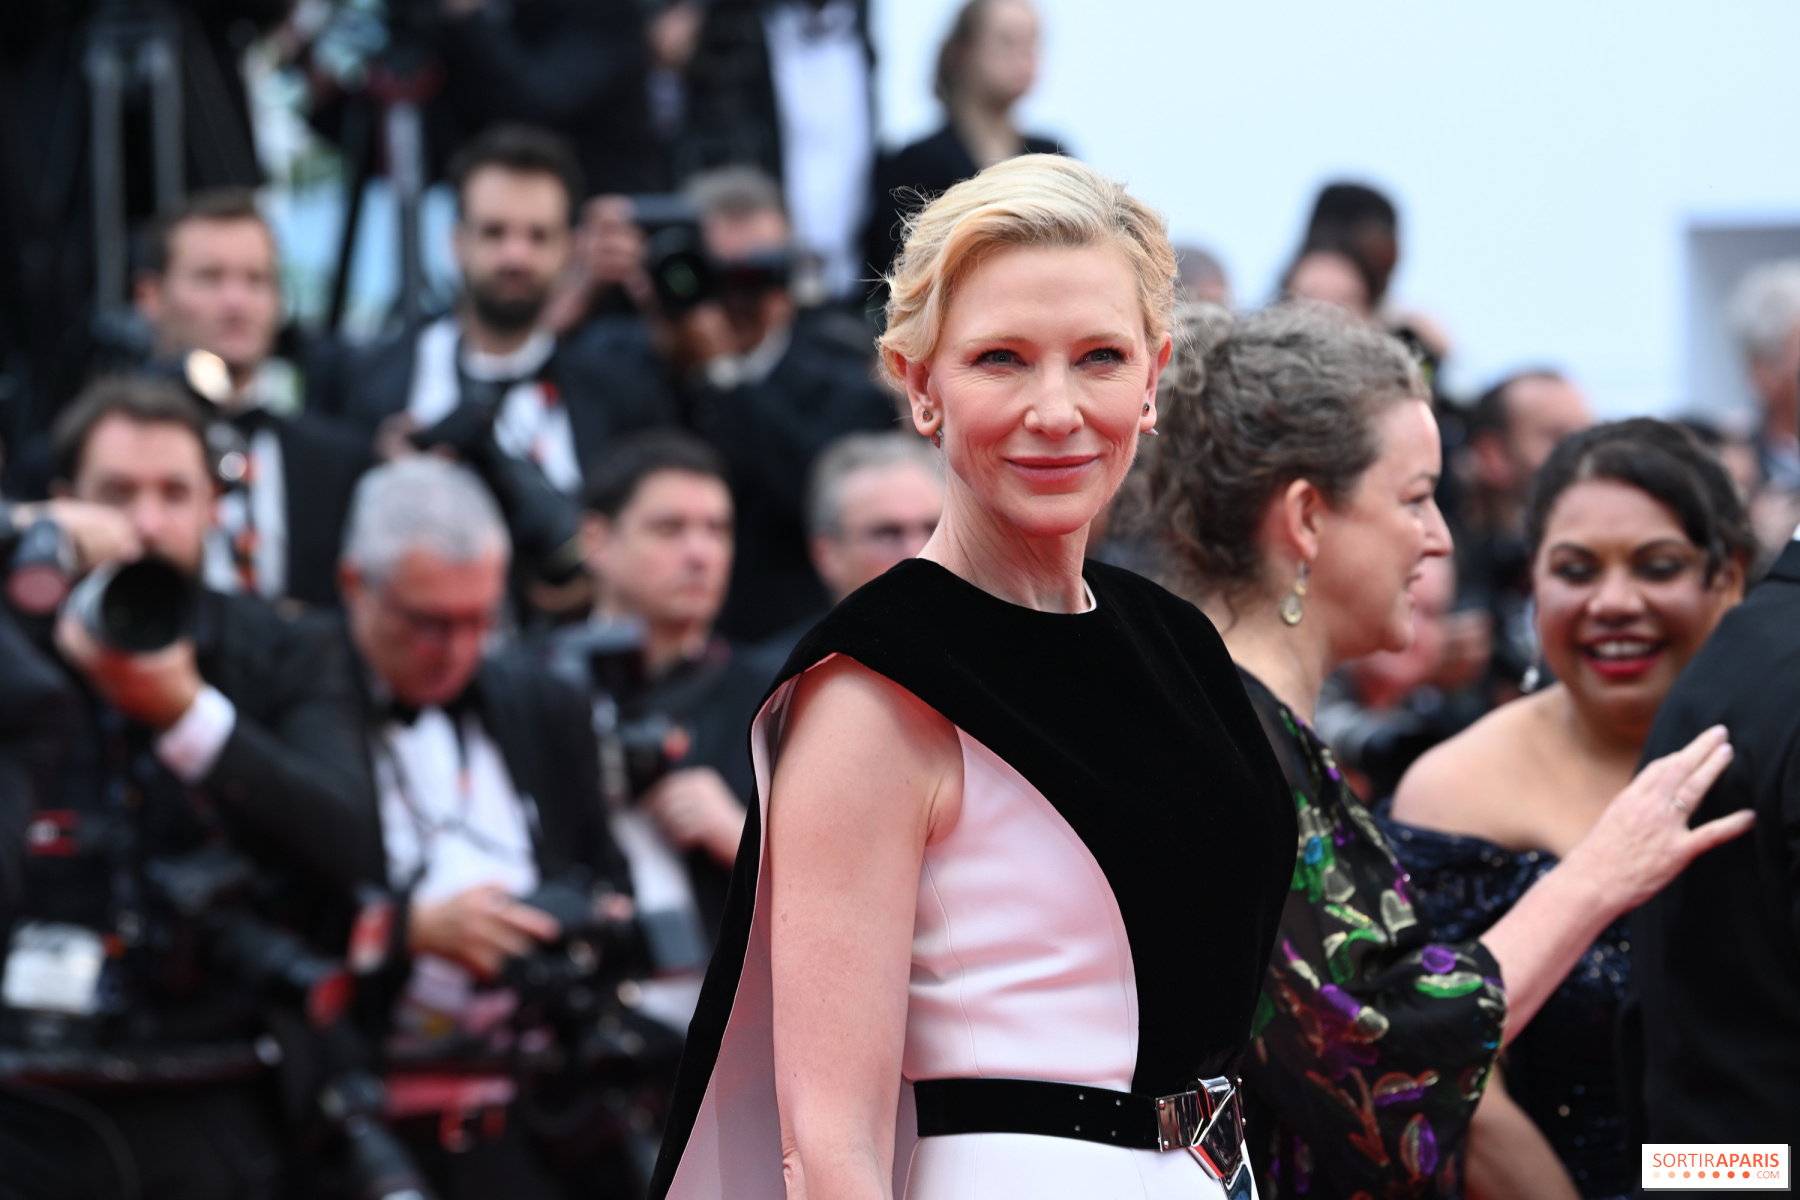 Festival de Cannes 2023: todos los looks de la alfombra roja